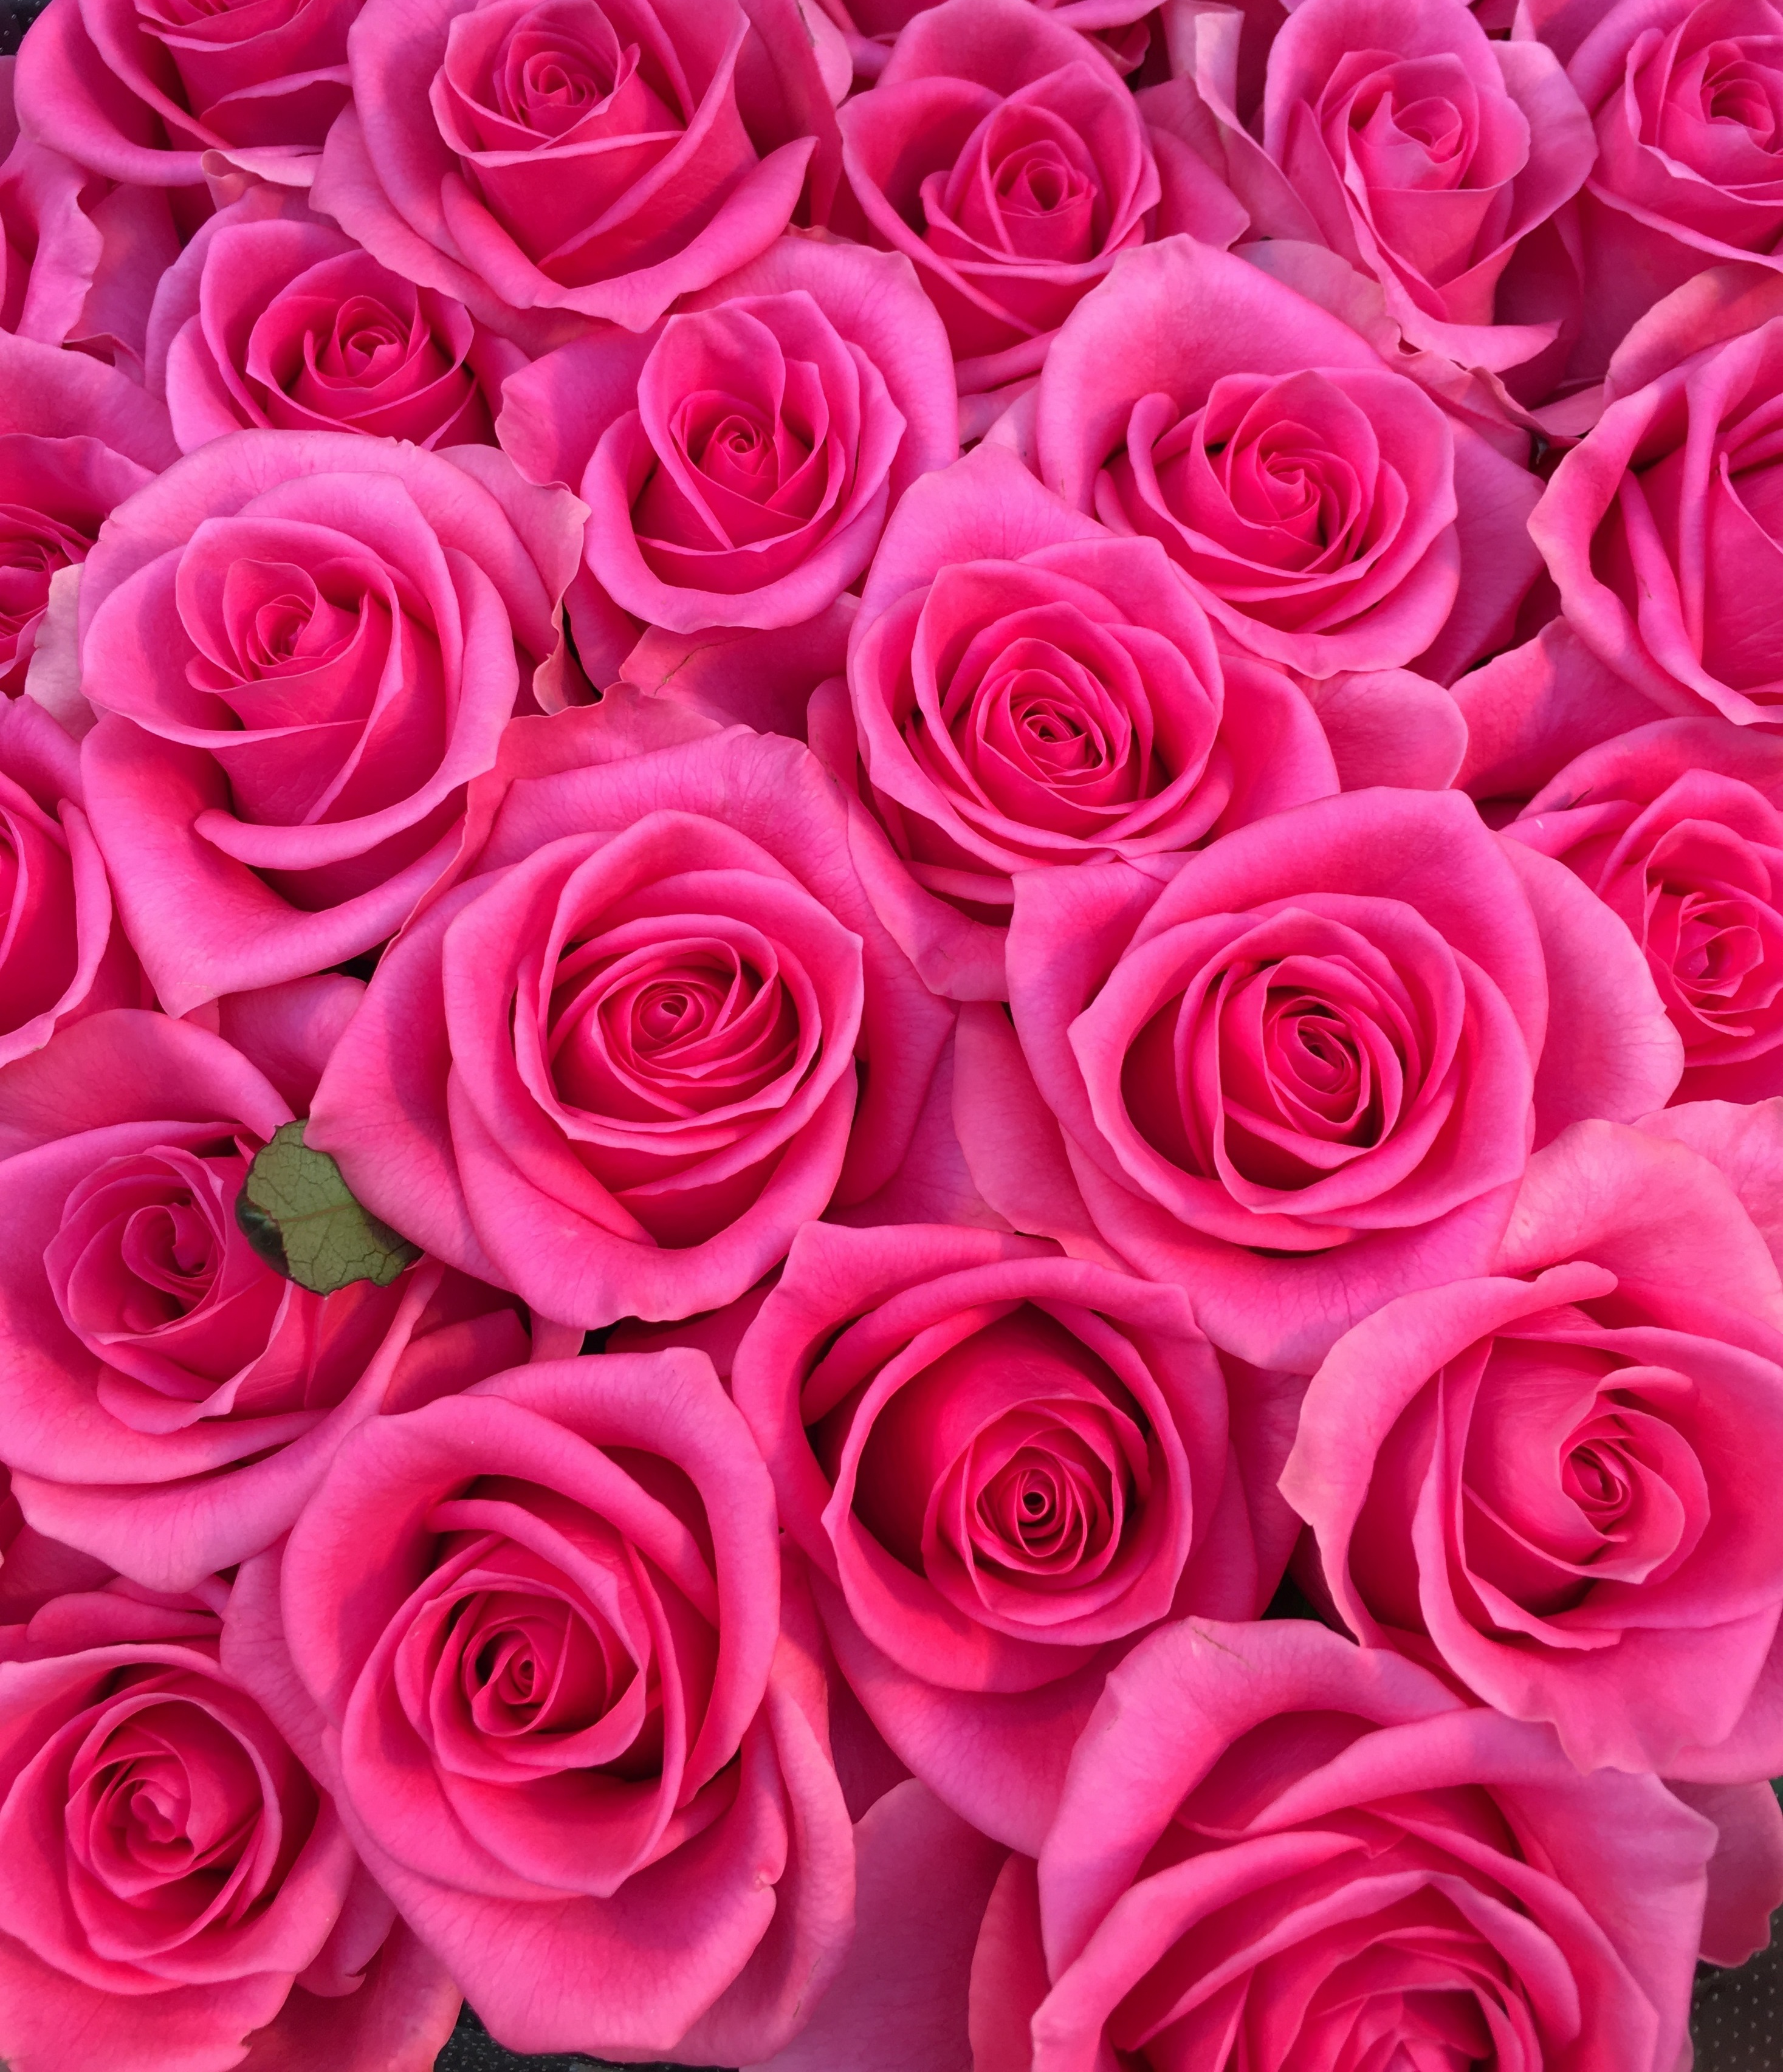 半額品 バラとガーベラの華やかブーケ マリアンヌ ピンク バラの花束 100本 生花 お祝い 記念日 誕生日 フラワーギフト バラ 人気ブランドを Ihmc21 Com